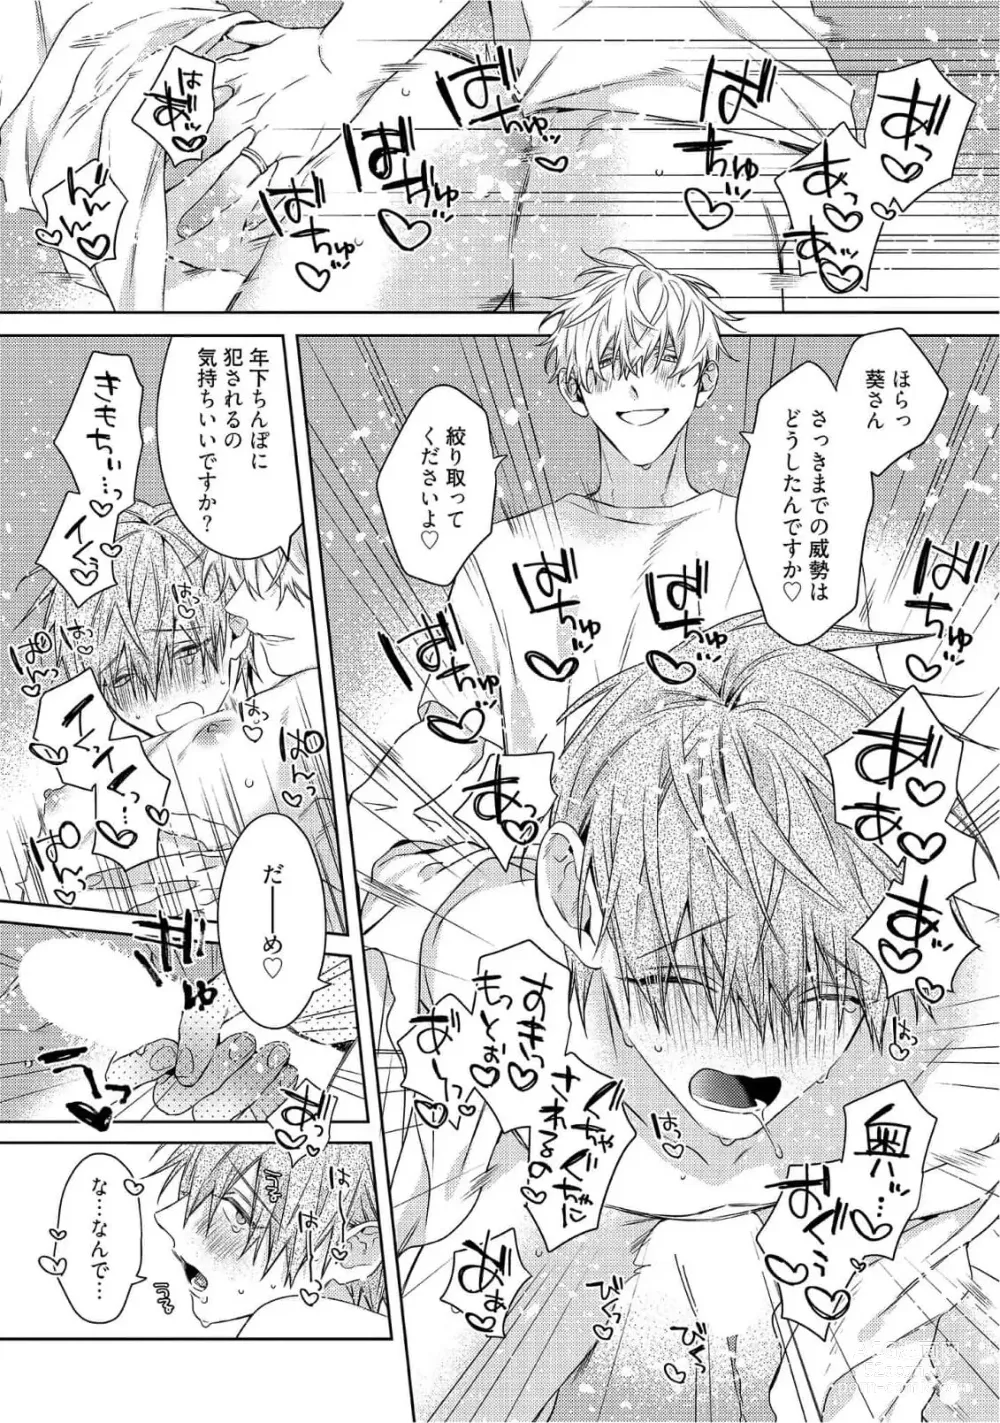 Page 277 of manga Motto! Ecchi wa shuu 7 Kibou Desu!